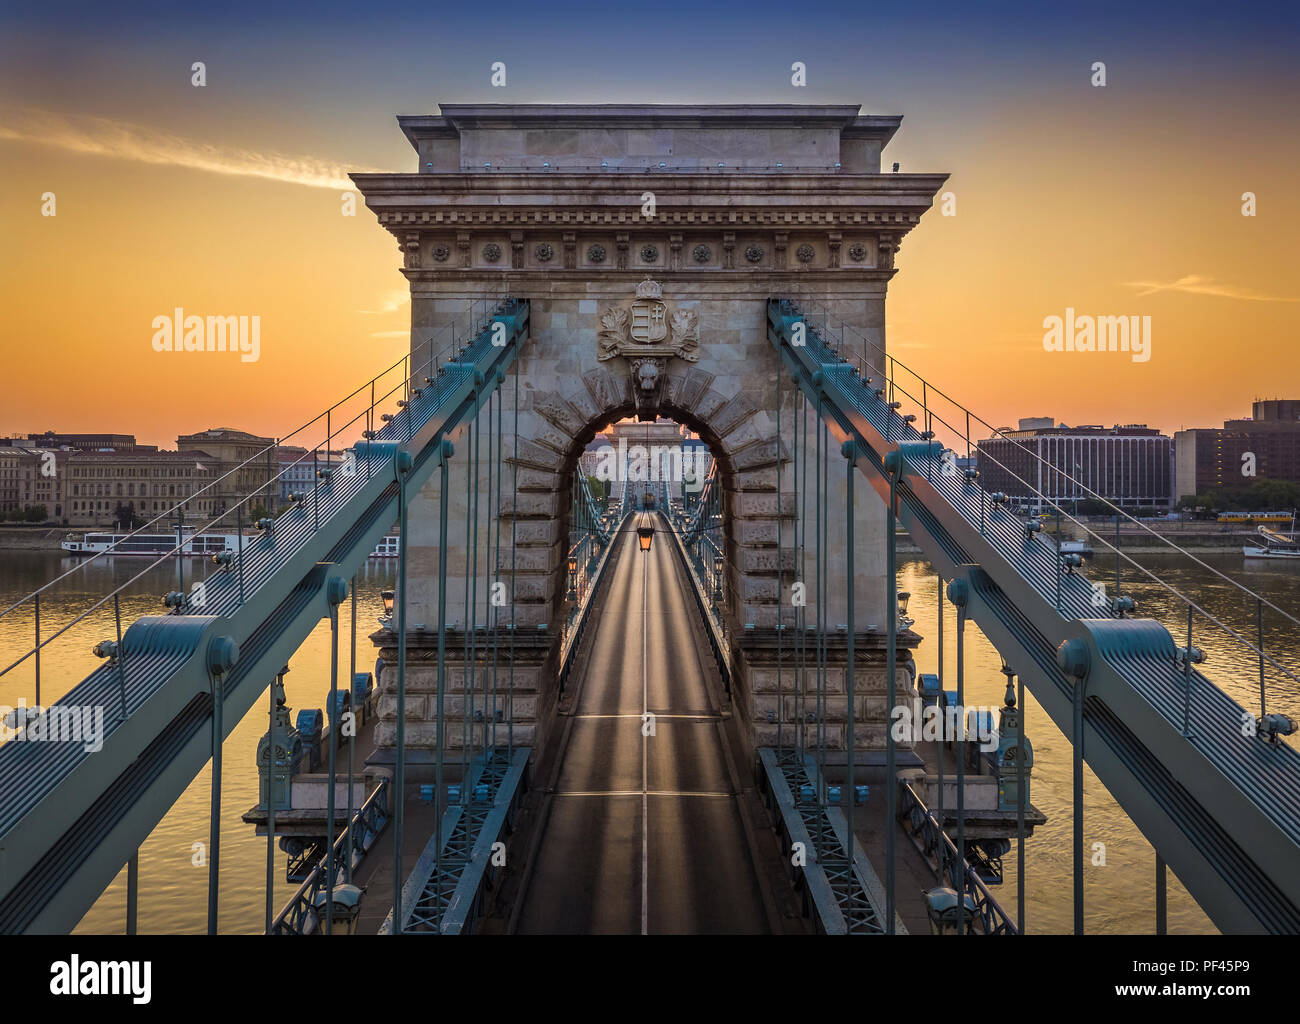 Budapest, Hungary - The world famous Szechenyi Chain Bridge at sunrise Stock Photo